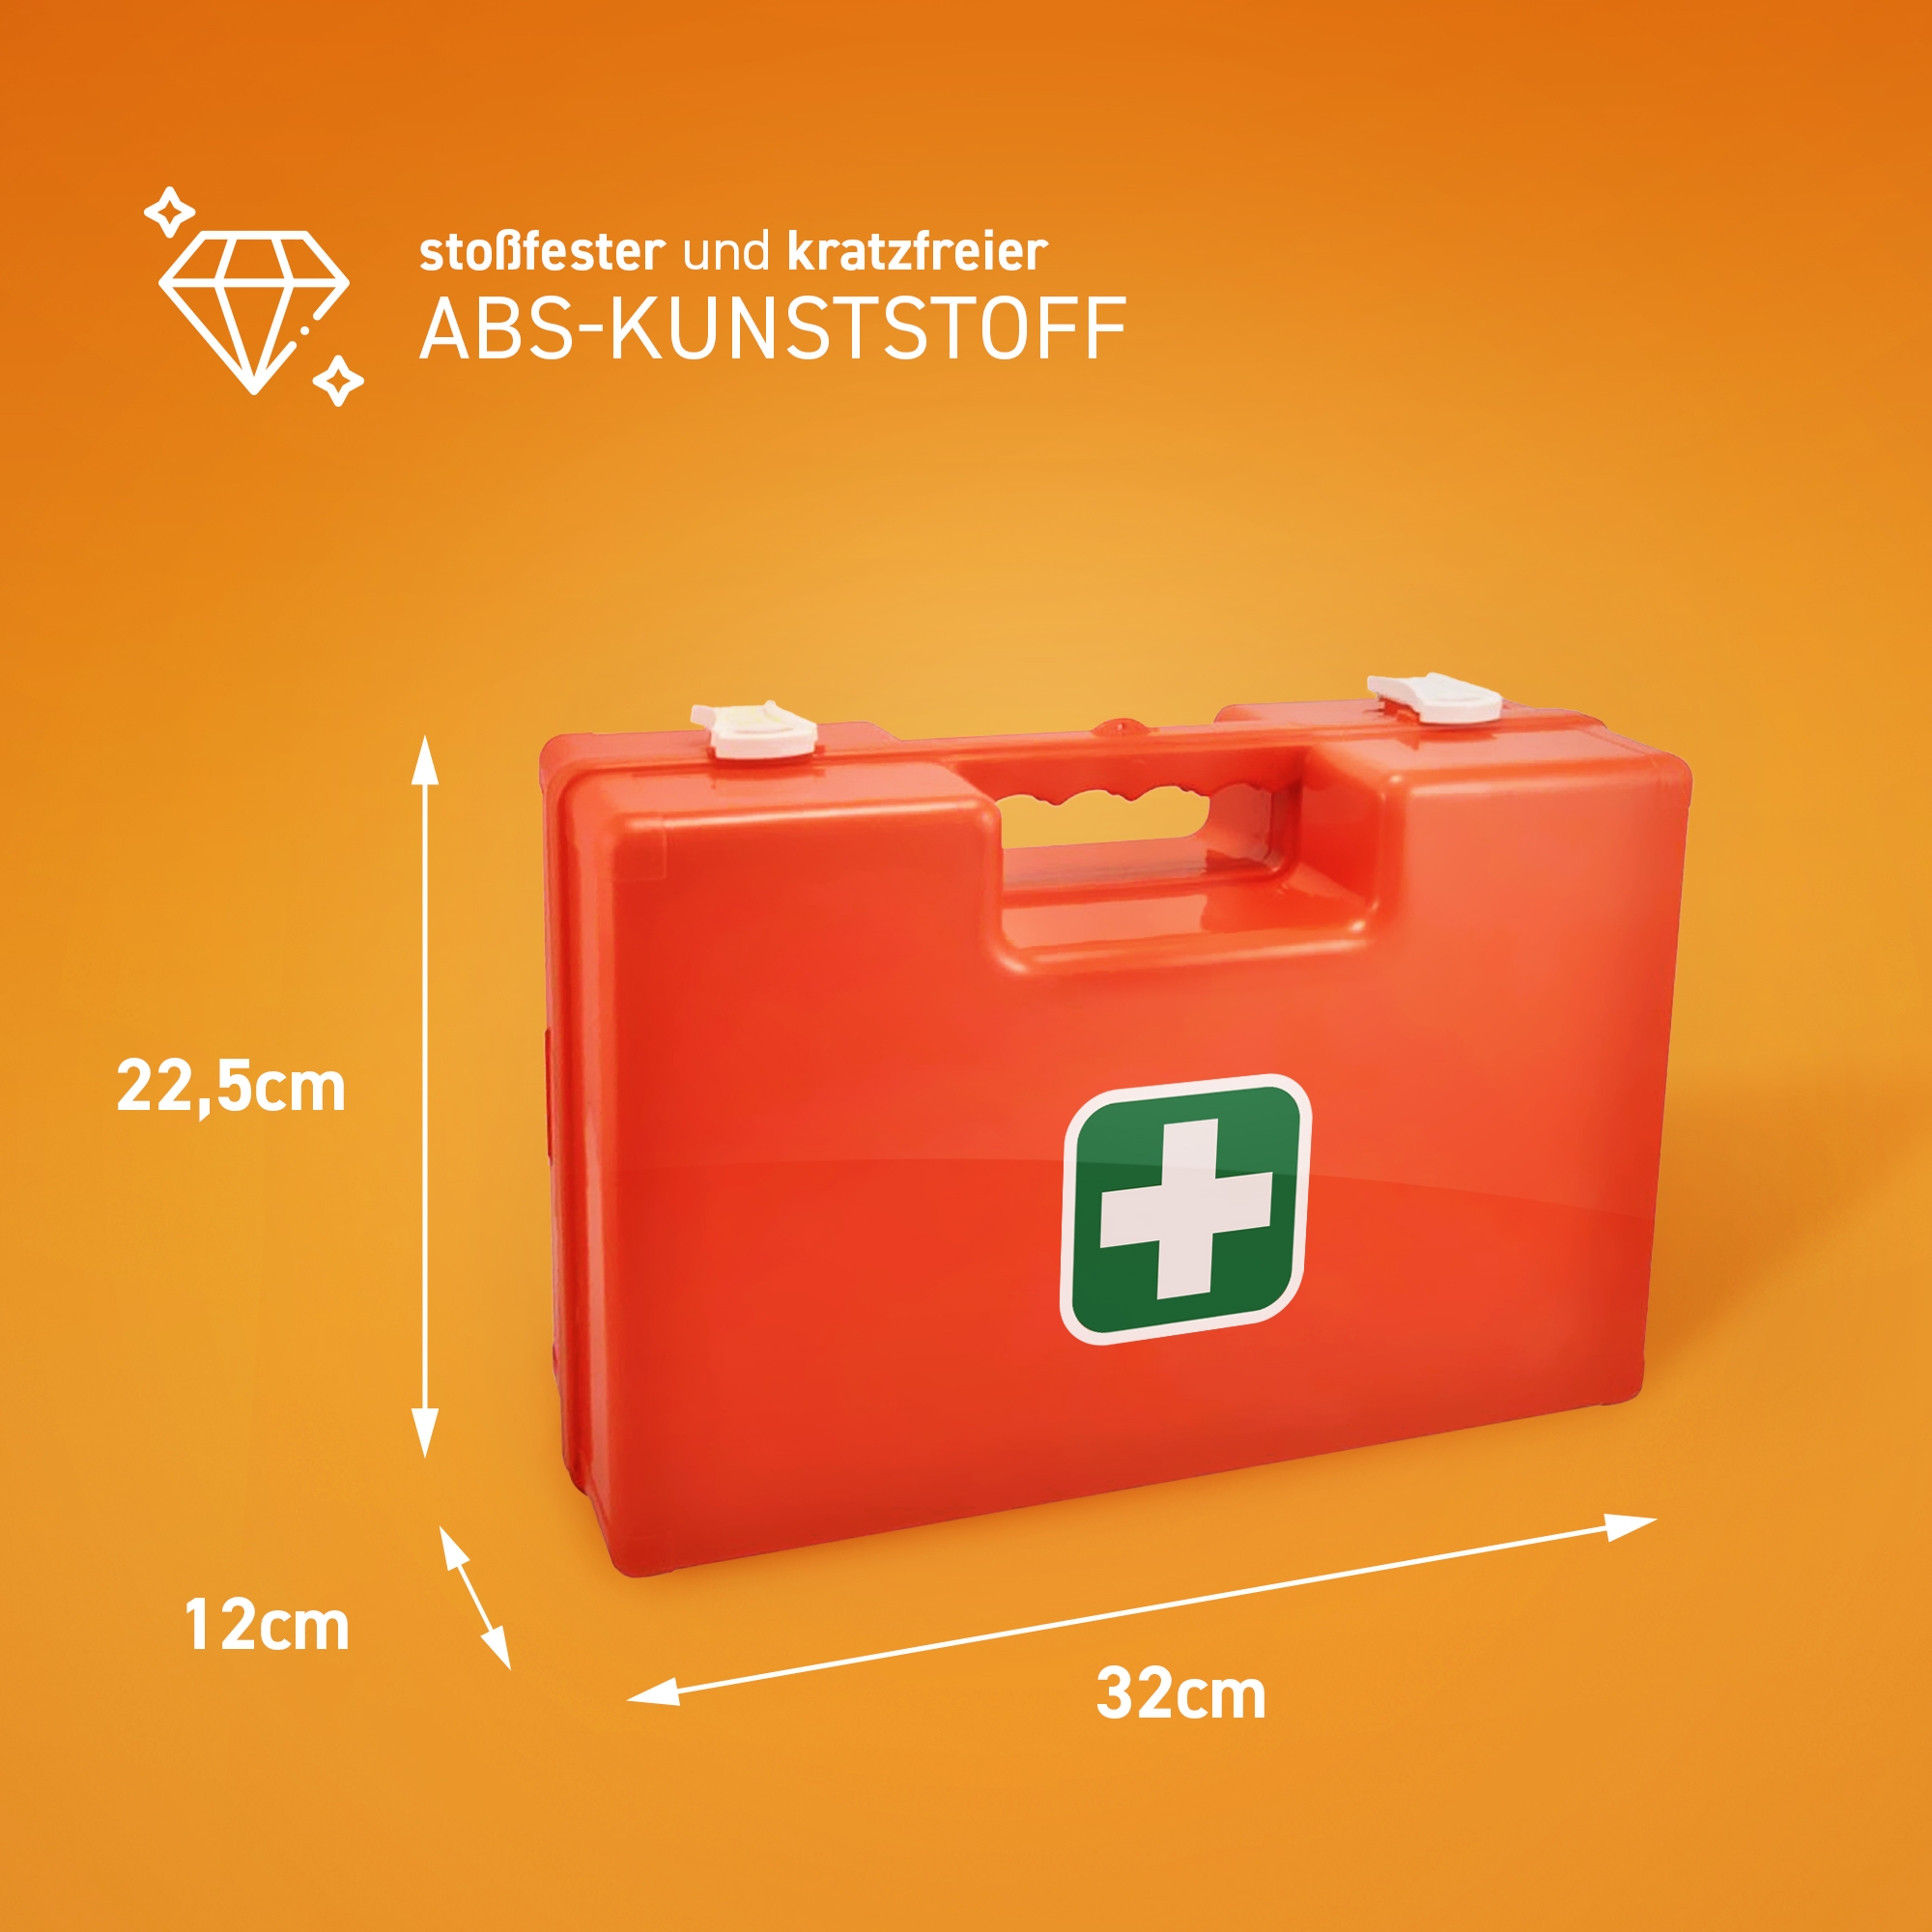 Medicalcorner24 Erste Hilfe Koffer, ABS-Kunststoff, leer 32x22,5x12cm